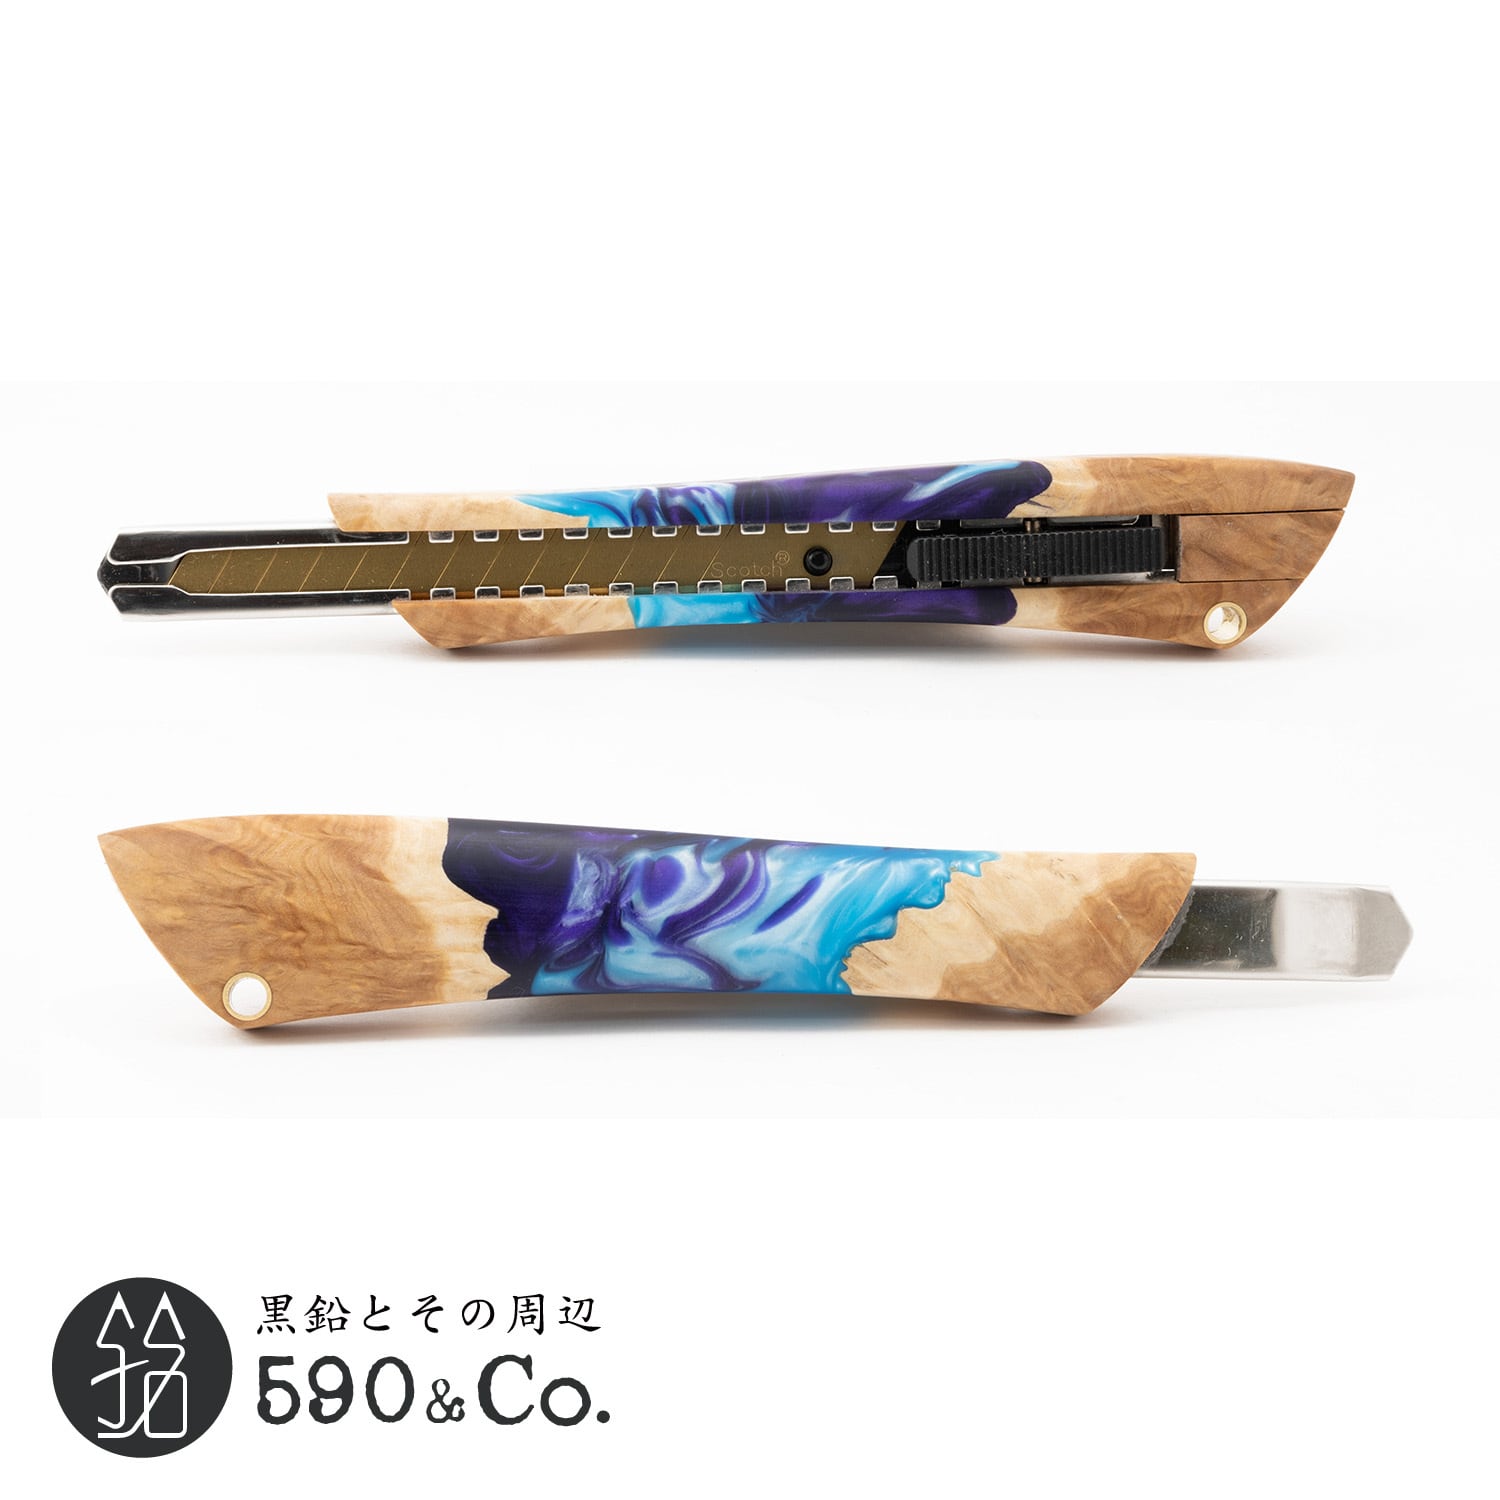 Flamberg/フランベルク】木製カッターナイフS型 (ウッドレジン) | 590&Co.